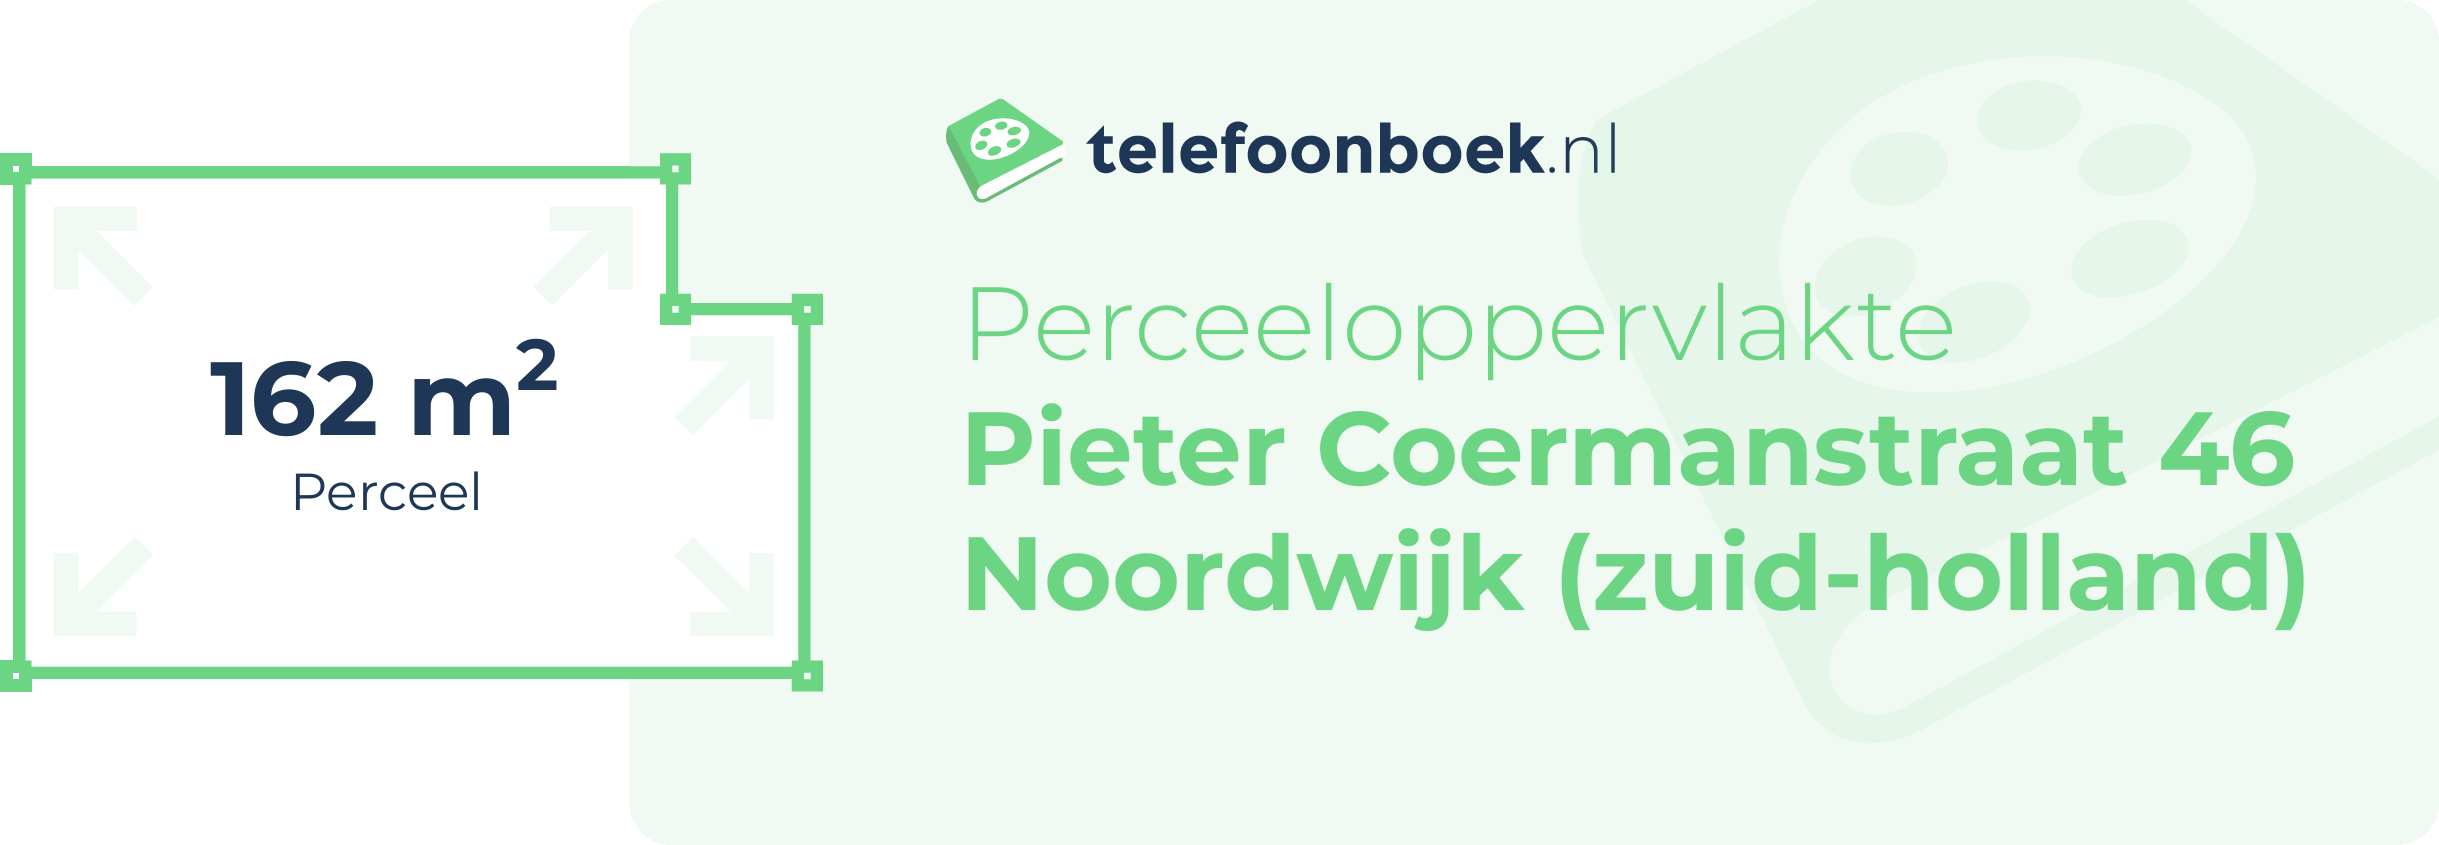 Perceeloppervlakte Pieter Coermanstraat 46 Noordwijk (Zuid-Holland)